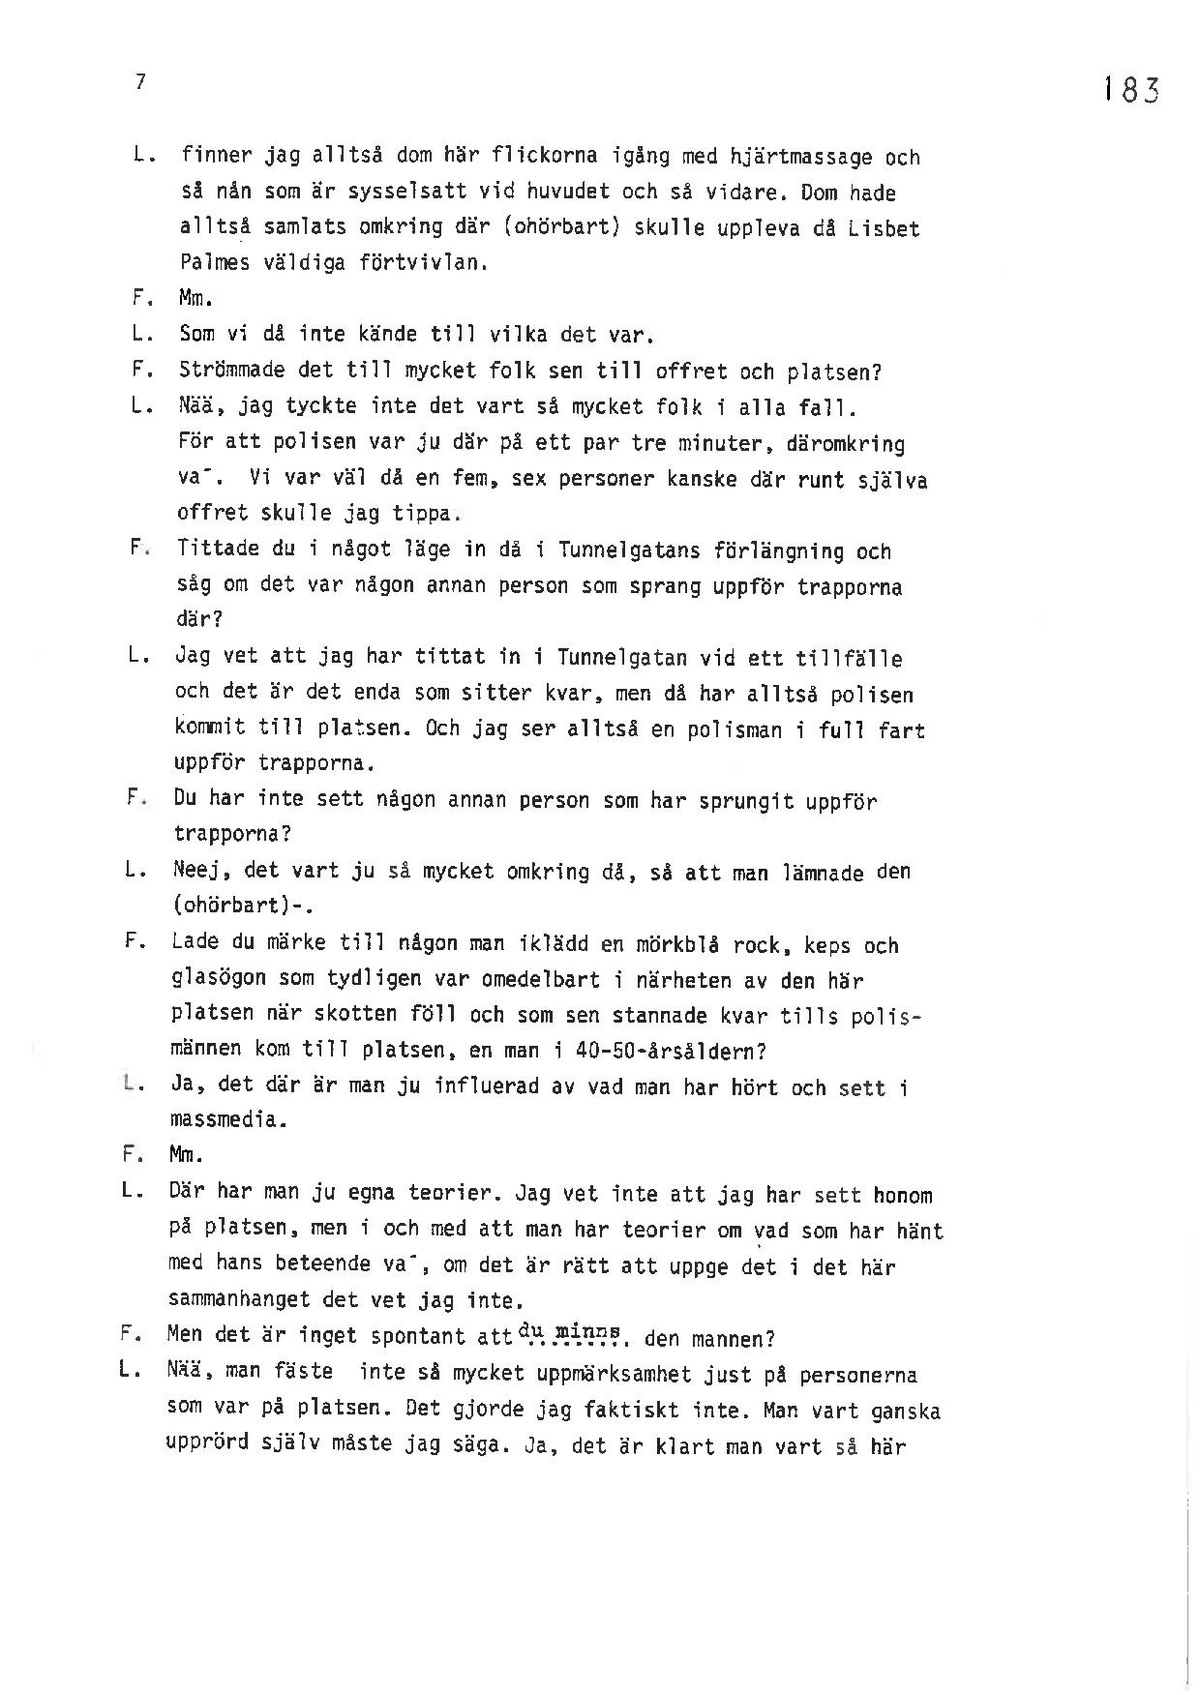 Pol-1986-04-27 1310 E9978-00-C VITTNESFÖRHÖR-Leif-Ljungqvist.pdf